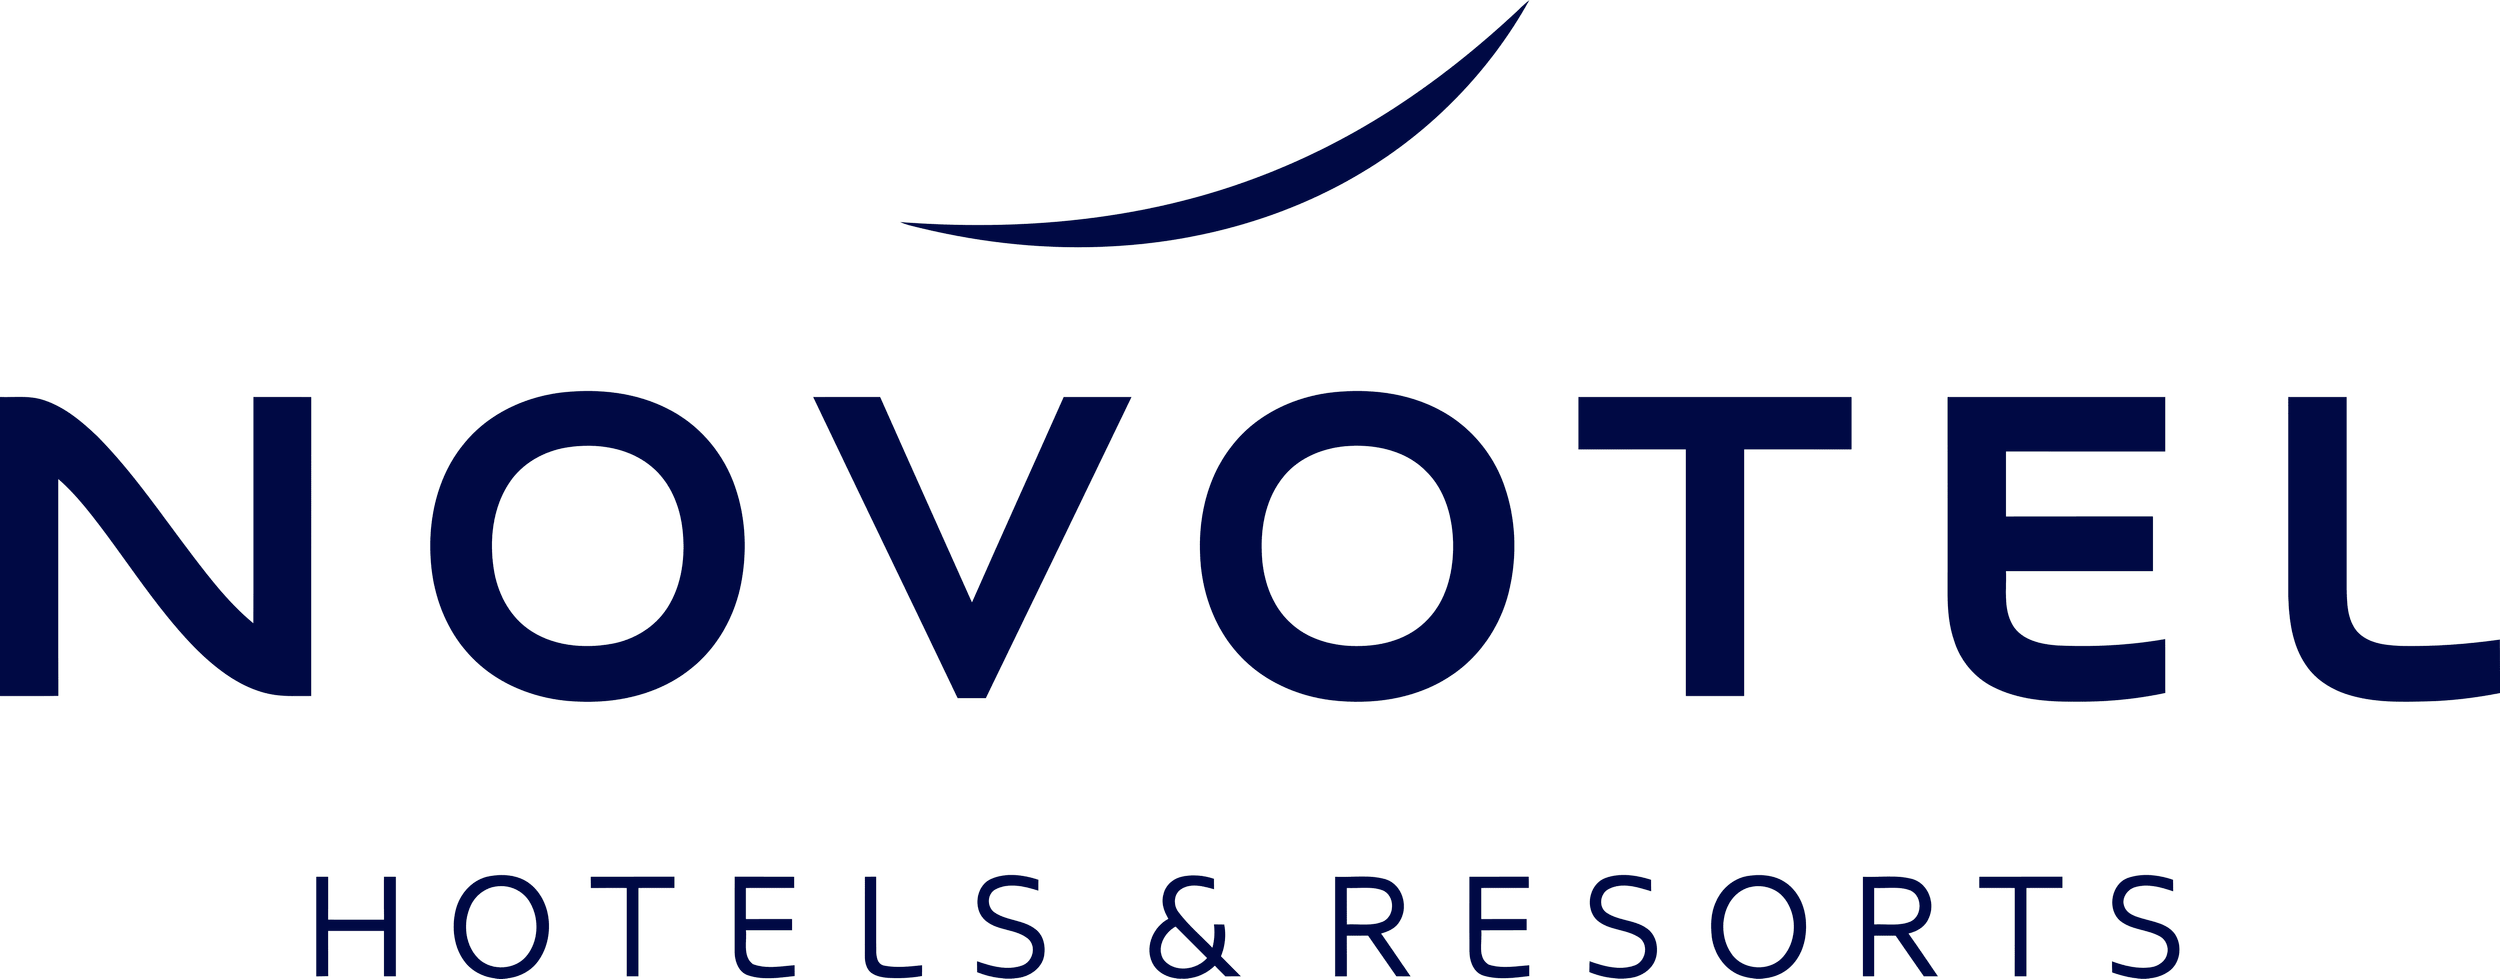 Novotel-Logo.png